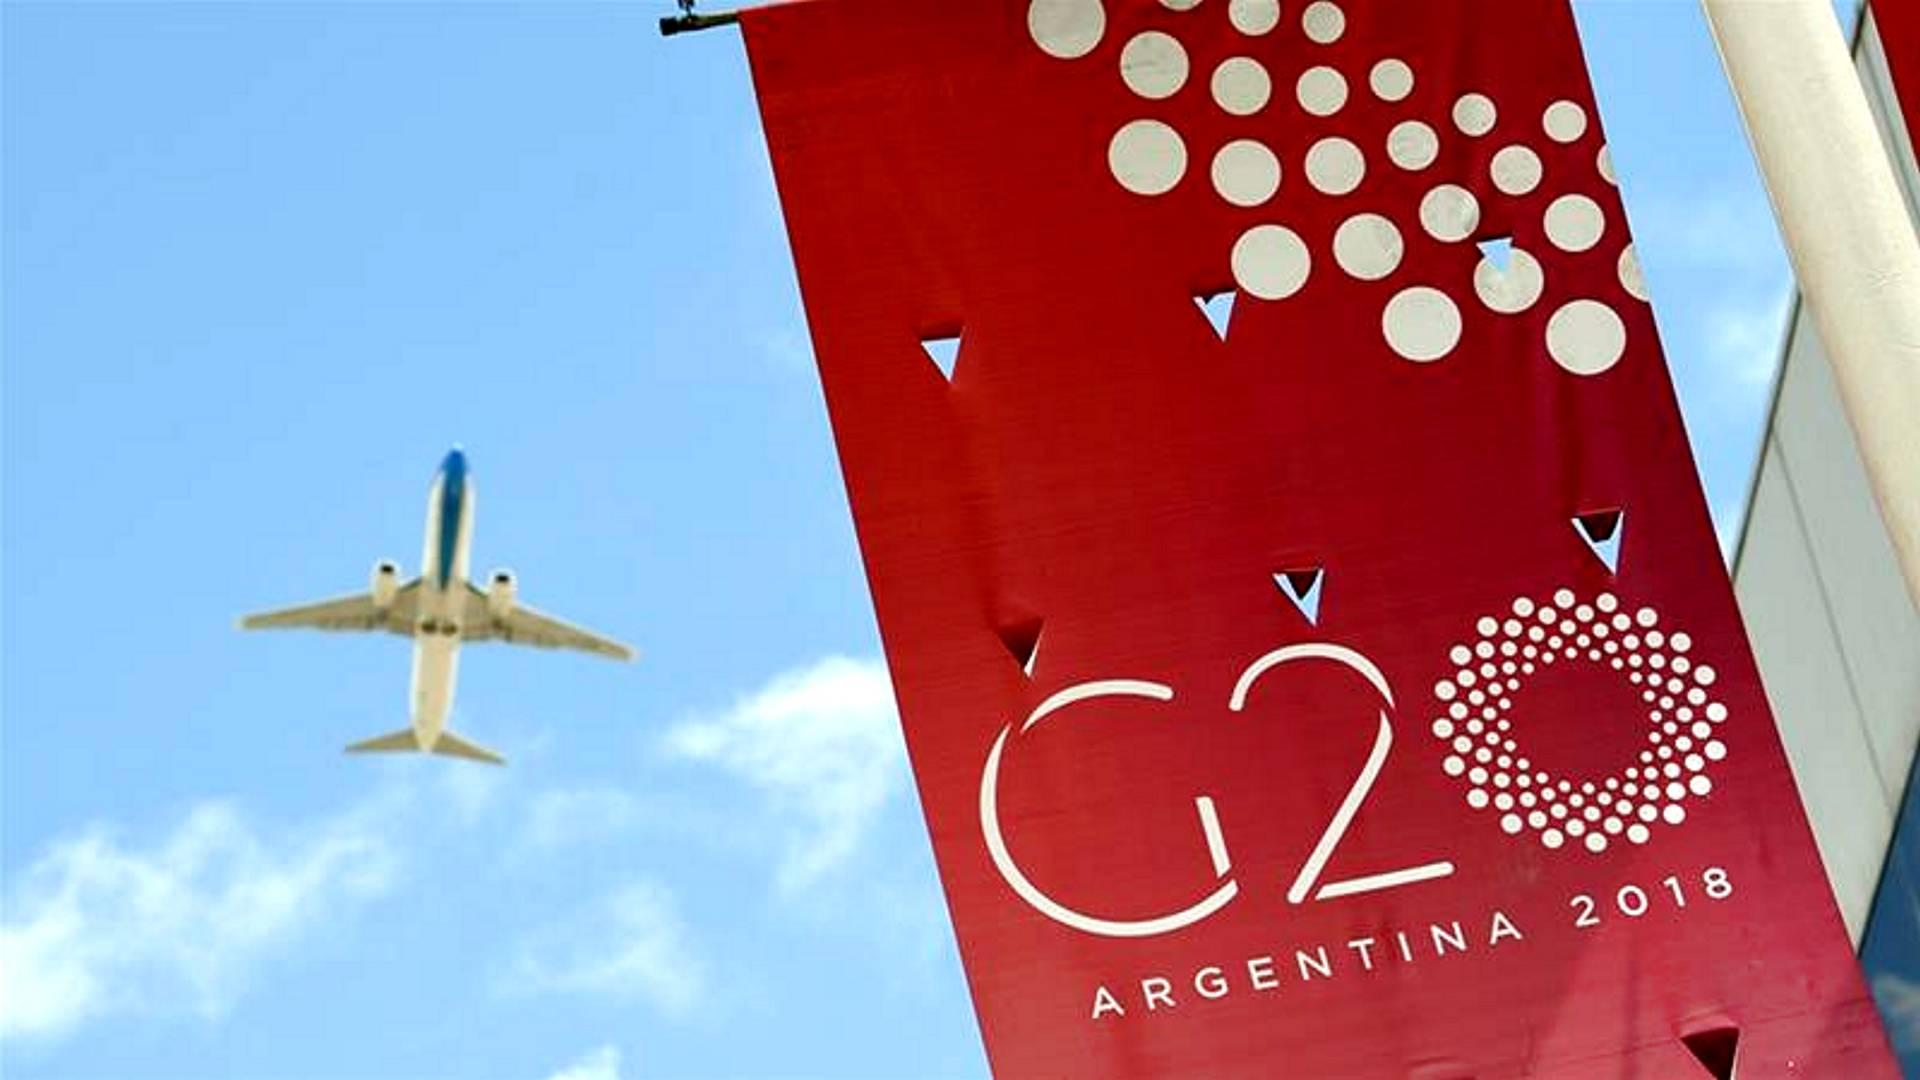 Tanácskozik az elitklub, heves viták várhatók a G20-as csúcson